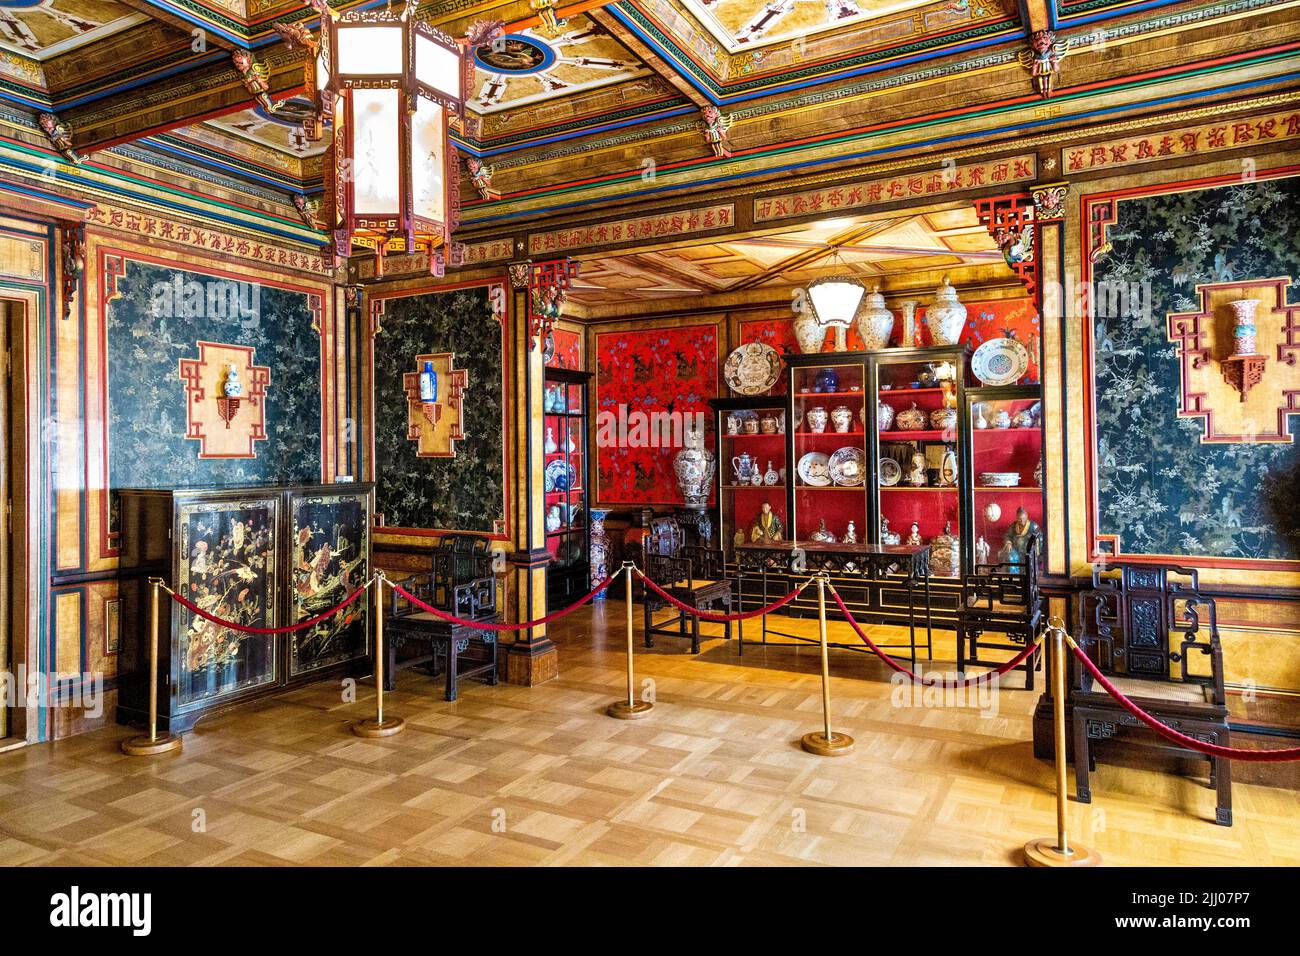 Interieur des opulenten chinesischen Raumes im orientalischen Stil im barocken königlichen Wilanow-Palast aus dem 17.. Jahrhundert, Warschau, Polen Stockfoto